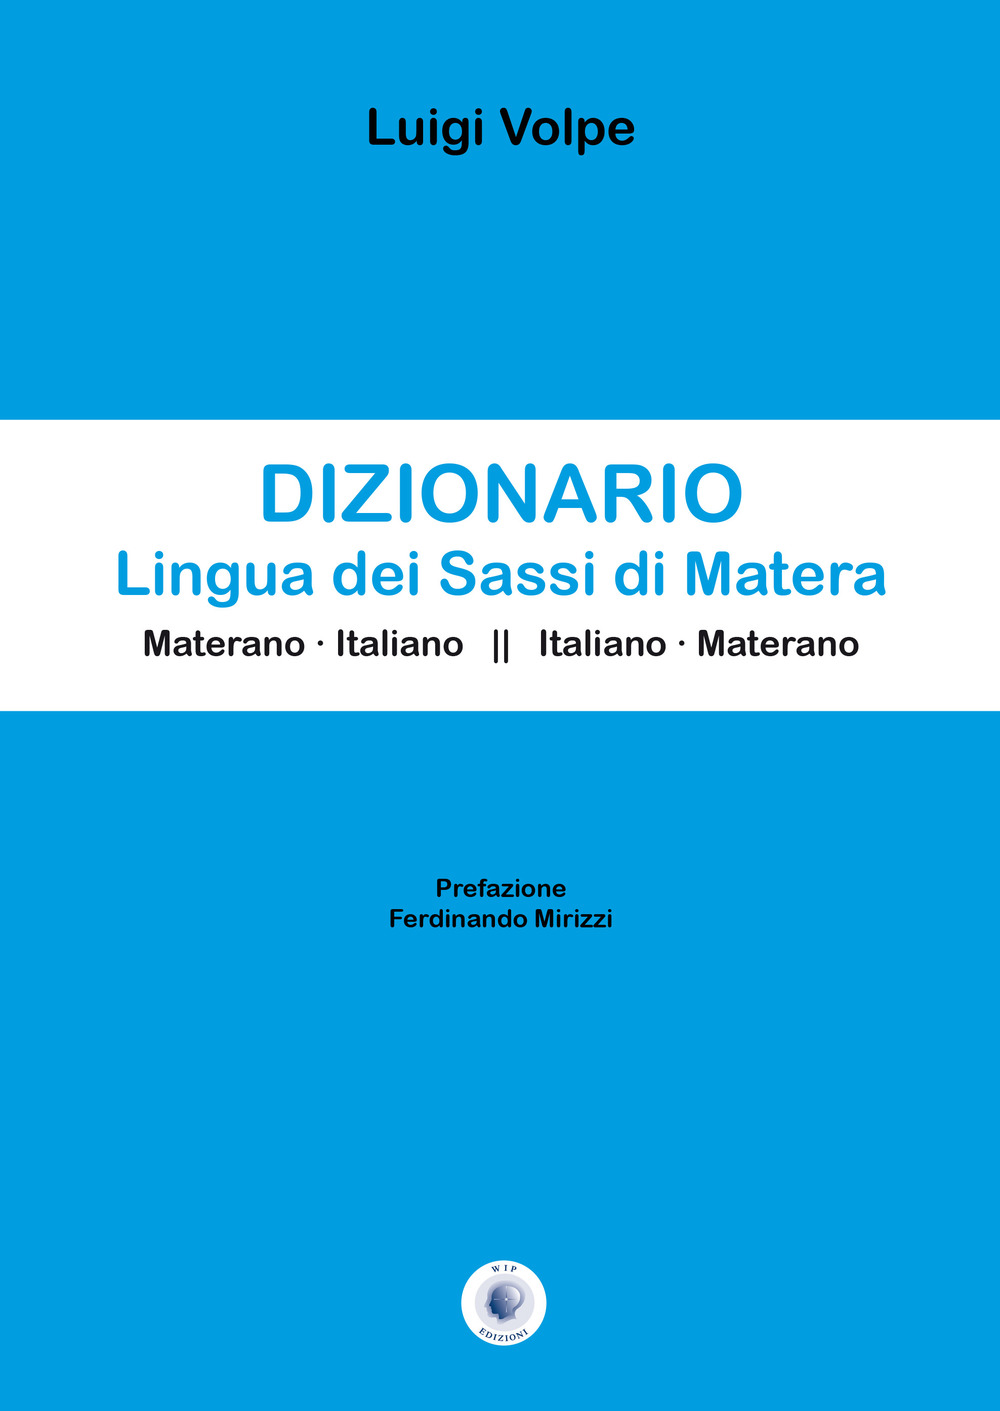 Libri Luigi Volpe - Dizionario Lingua Dei Sassi Di Matera NUOVO SIGILLATO, EDIZIONE DEL 18/10/2019 SUBITO DISPONIBILE